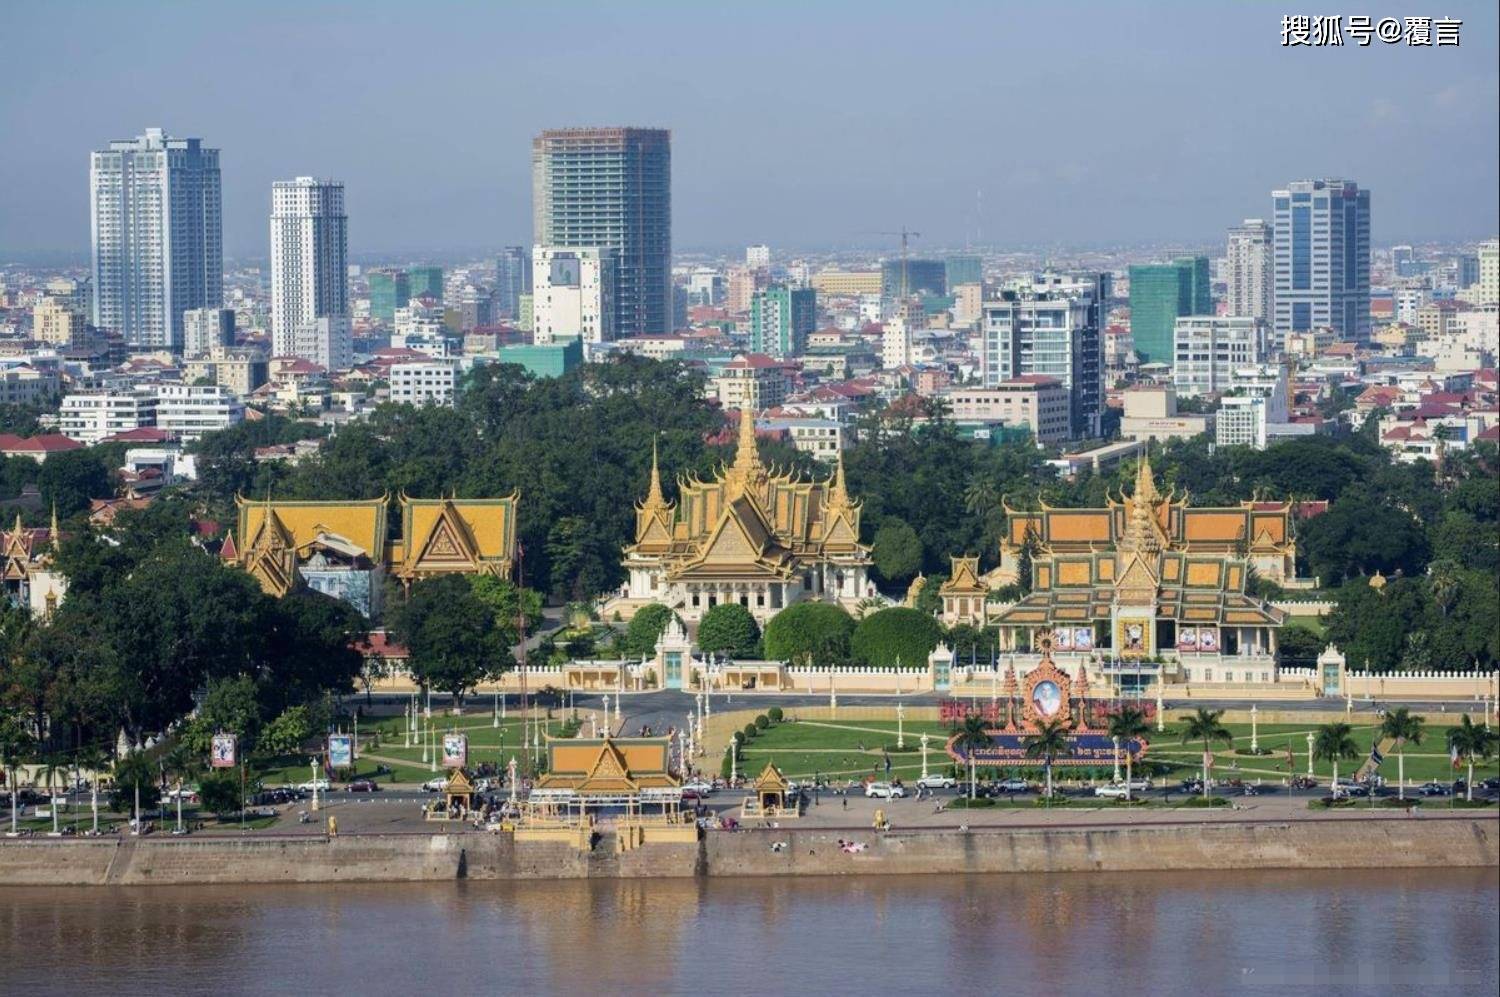 作为柬埔寨首都,金边是什么样的城市?